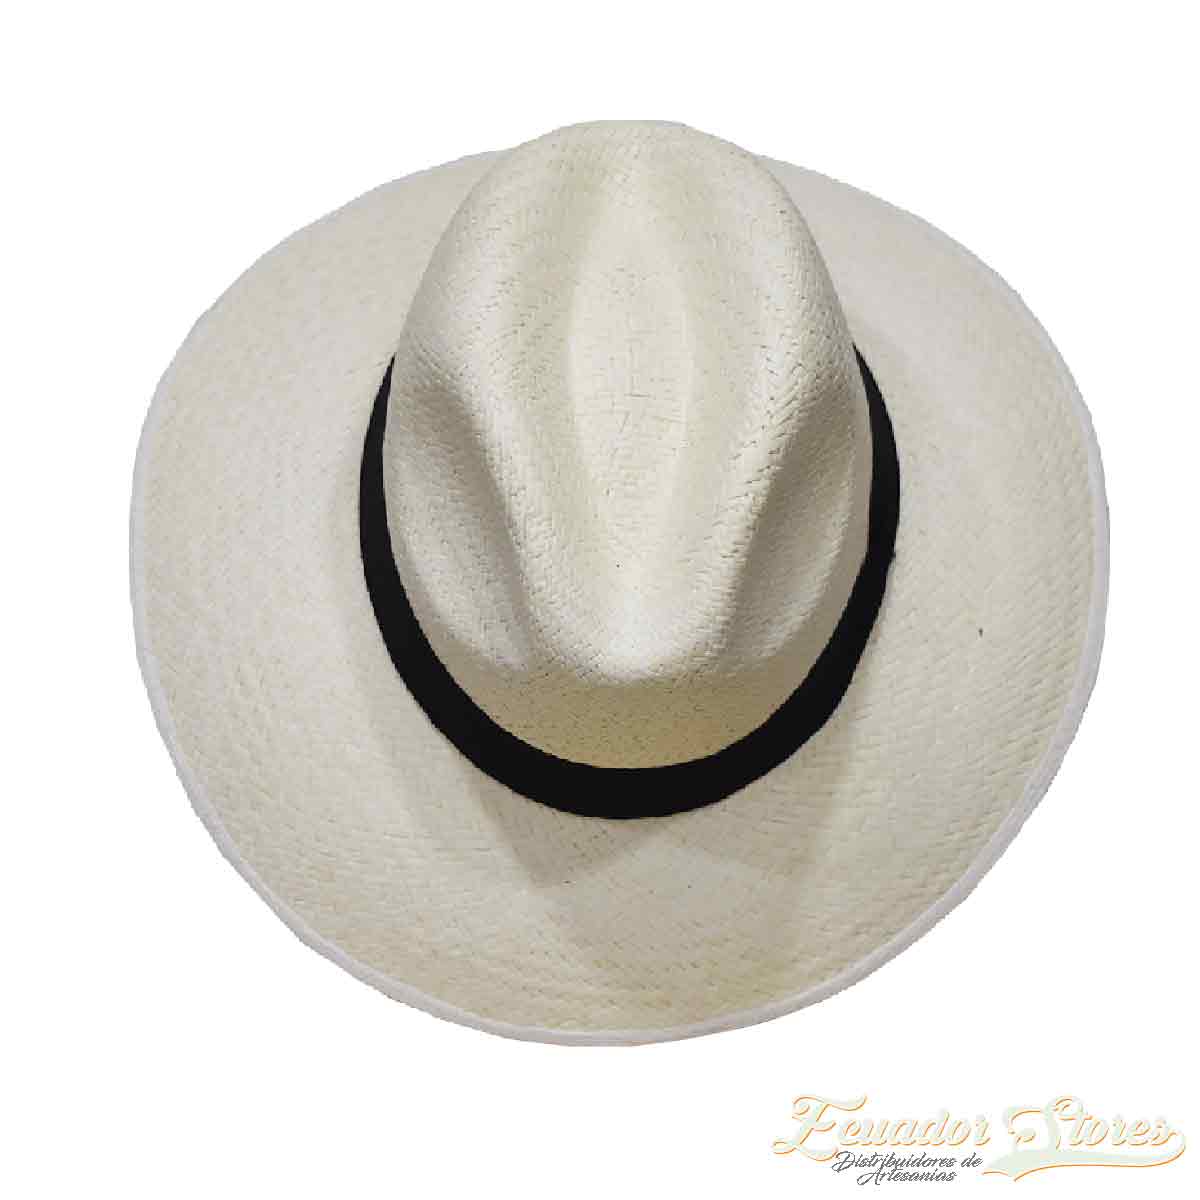 sombrero de paja toquilla economico, estilo austro o australiano clasico